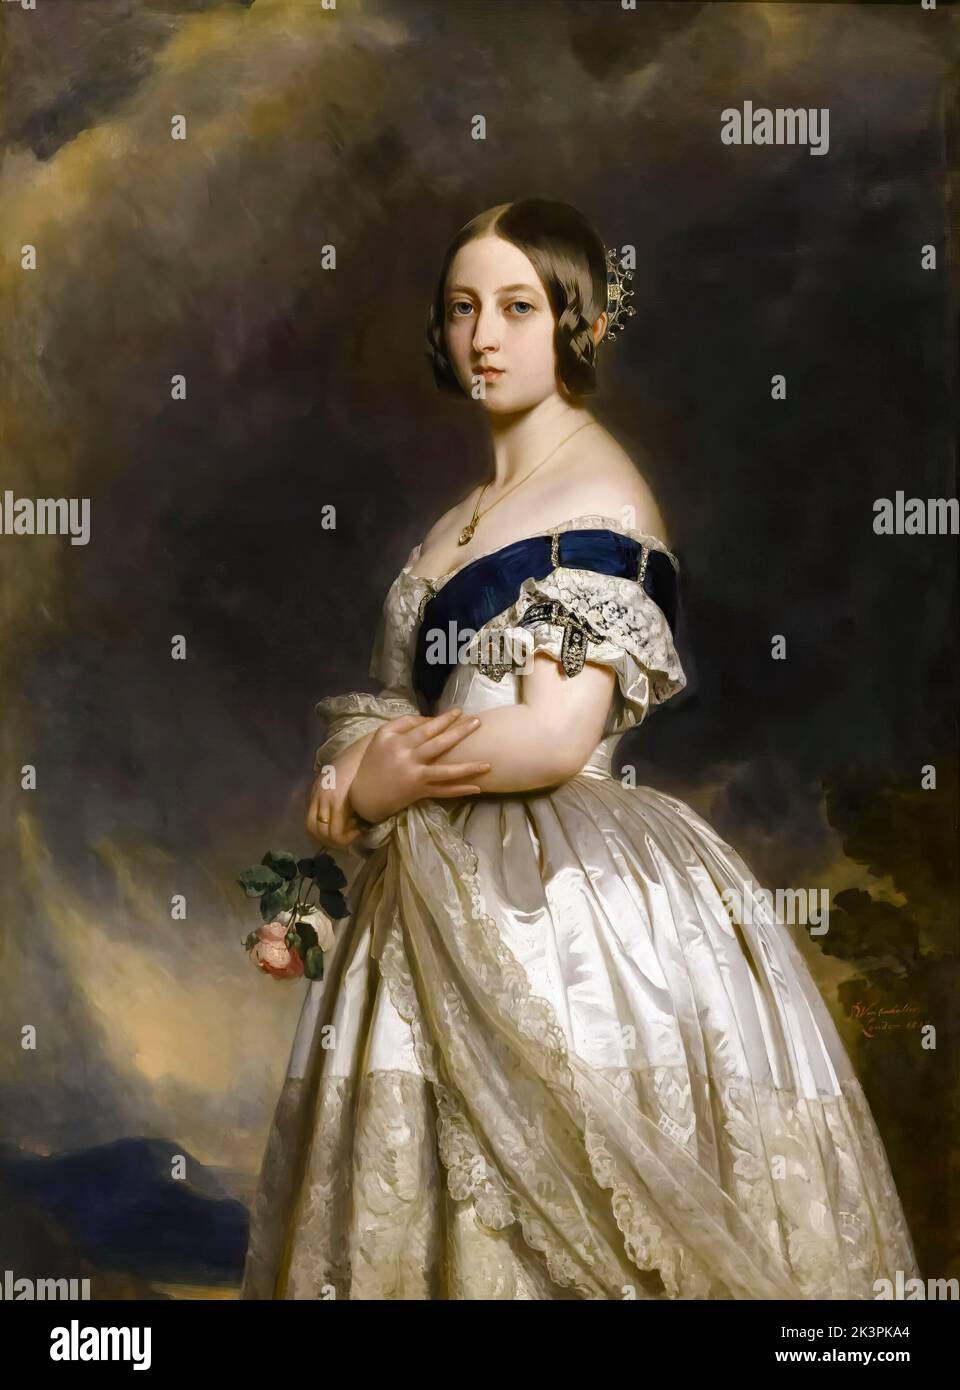 Reine Victoria (1819-1901) du Royaume-Uni de Grande-Bretagne et d'Irlande (1837-1901) comme jeune femme en 1837, portrait peint à l'huile sur toile par Franz Xaver Winterhalter, 1842 Banque D'Images